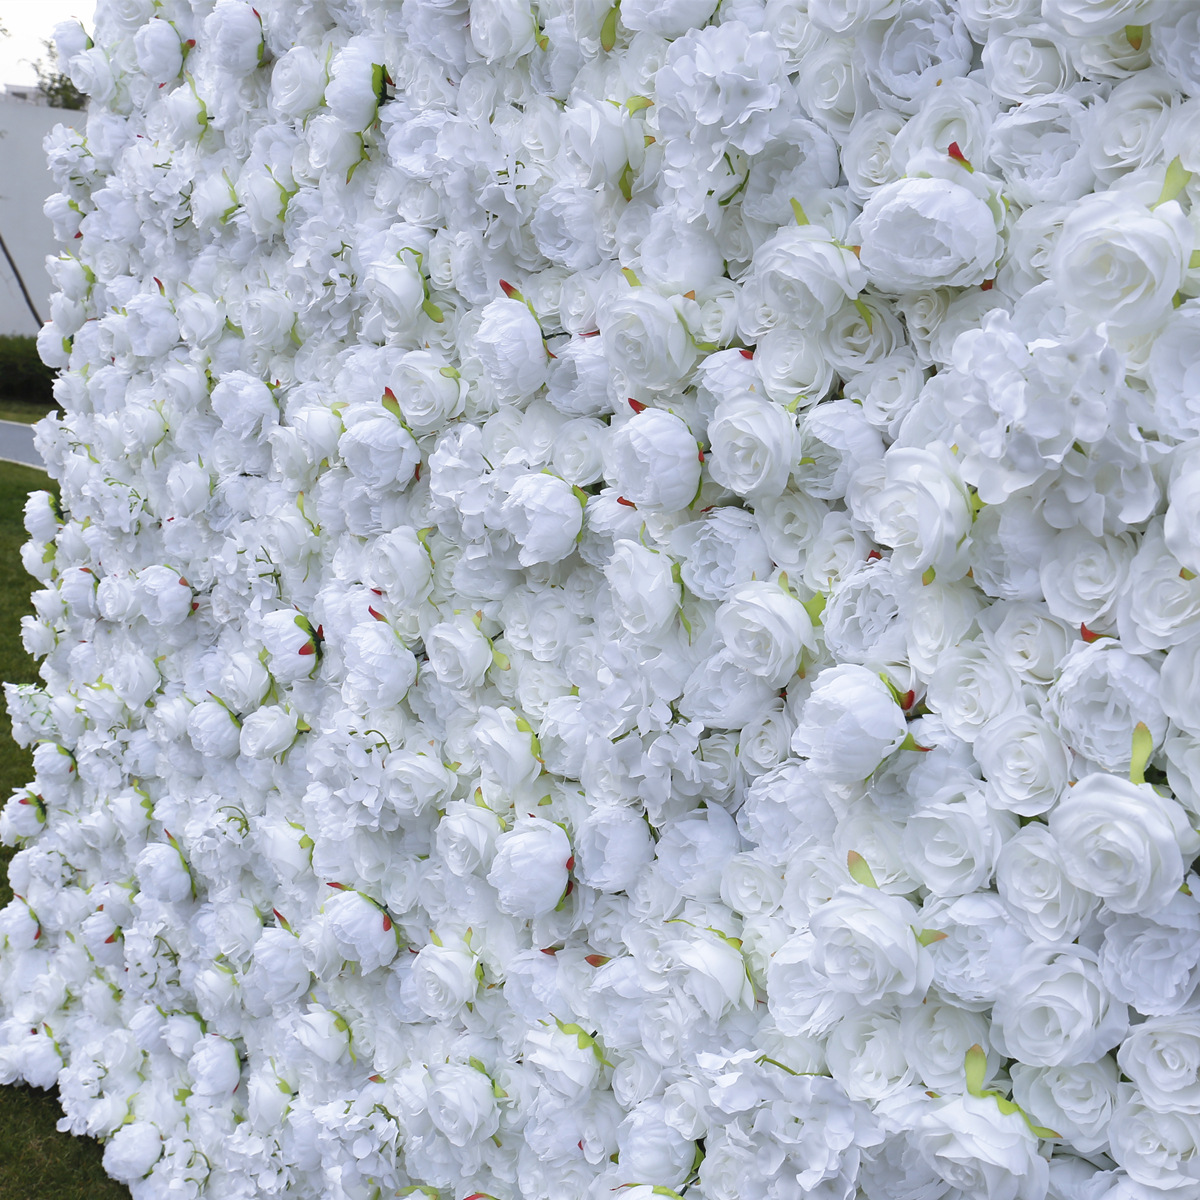 Fabryk direkte ferkeap suver wite doek boaiem simulearre blom muorre eftergrûn brulloft dekoraasje